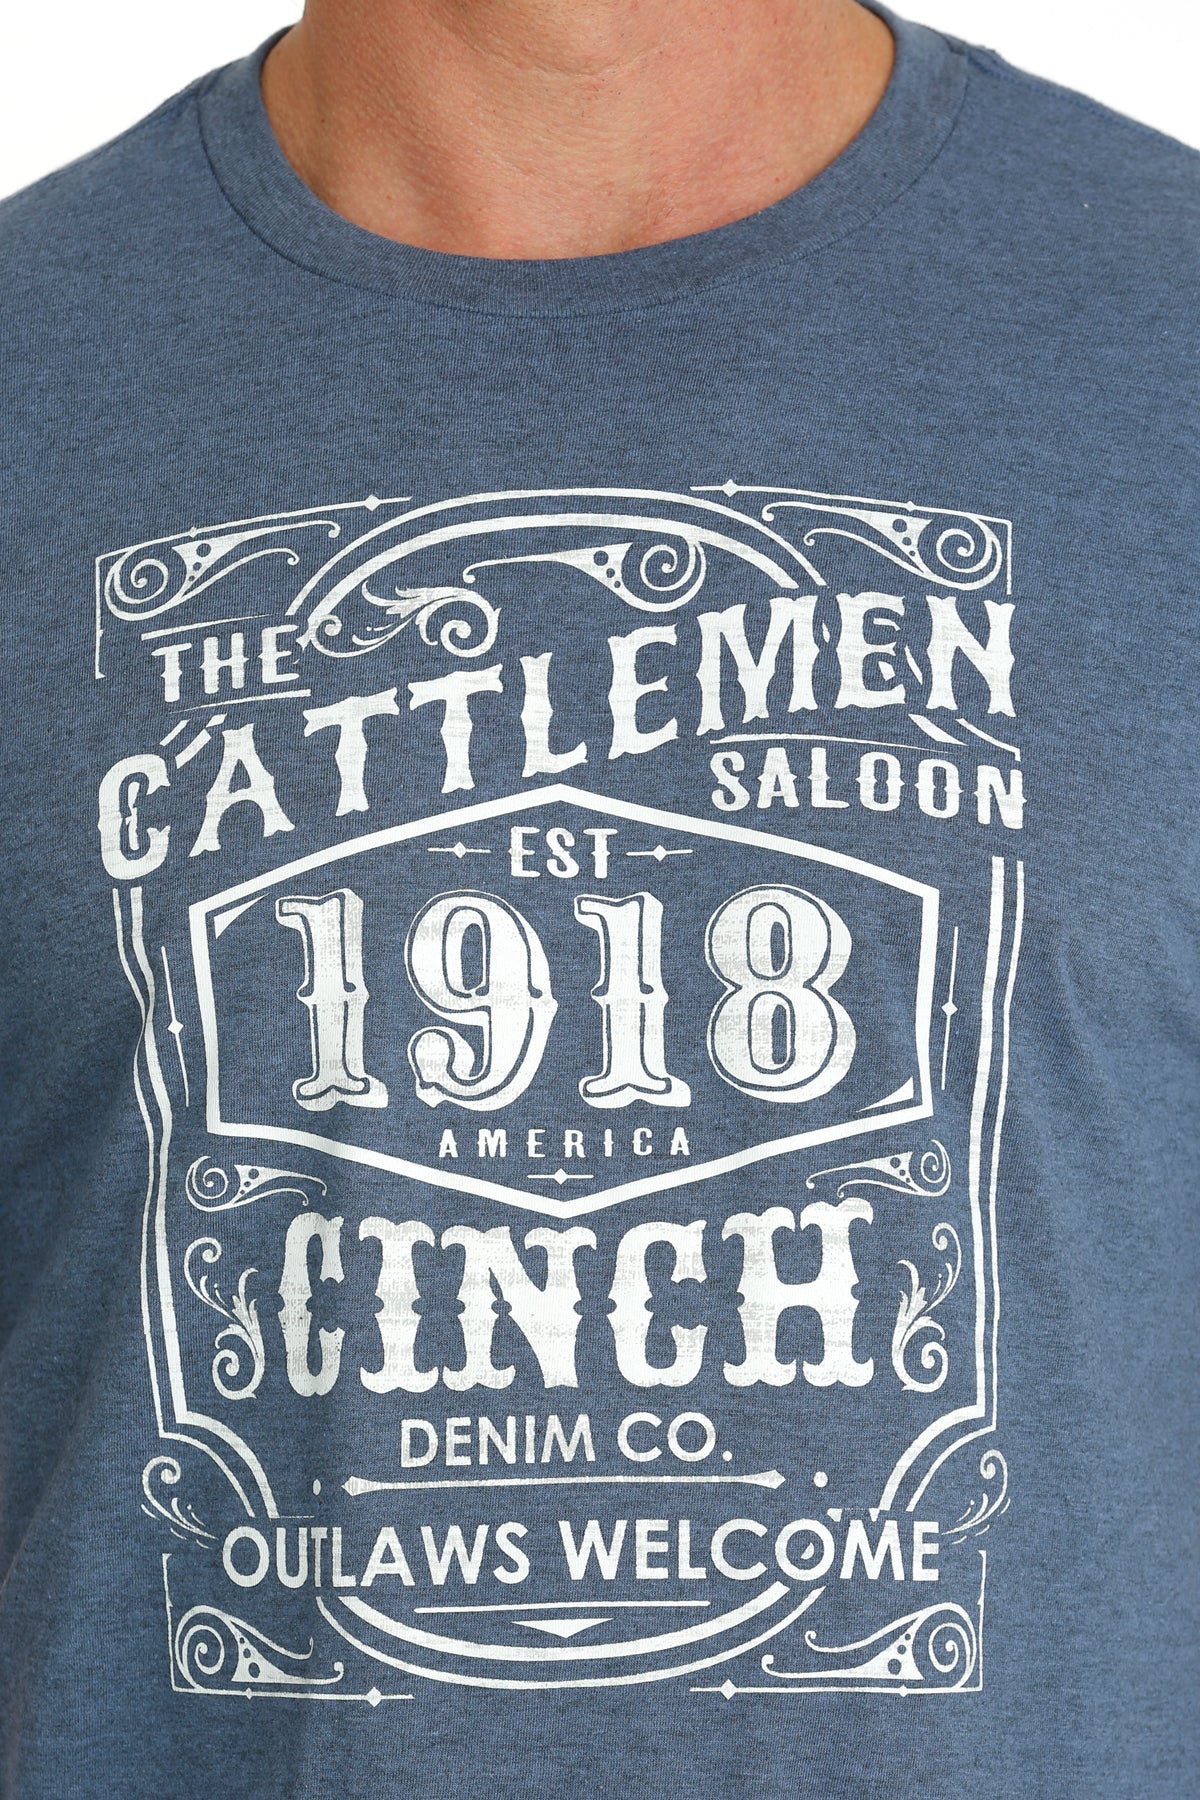 Cinch Men's Cattlemen Saloon 1918 Blue T-Shirt